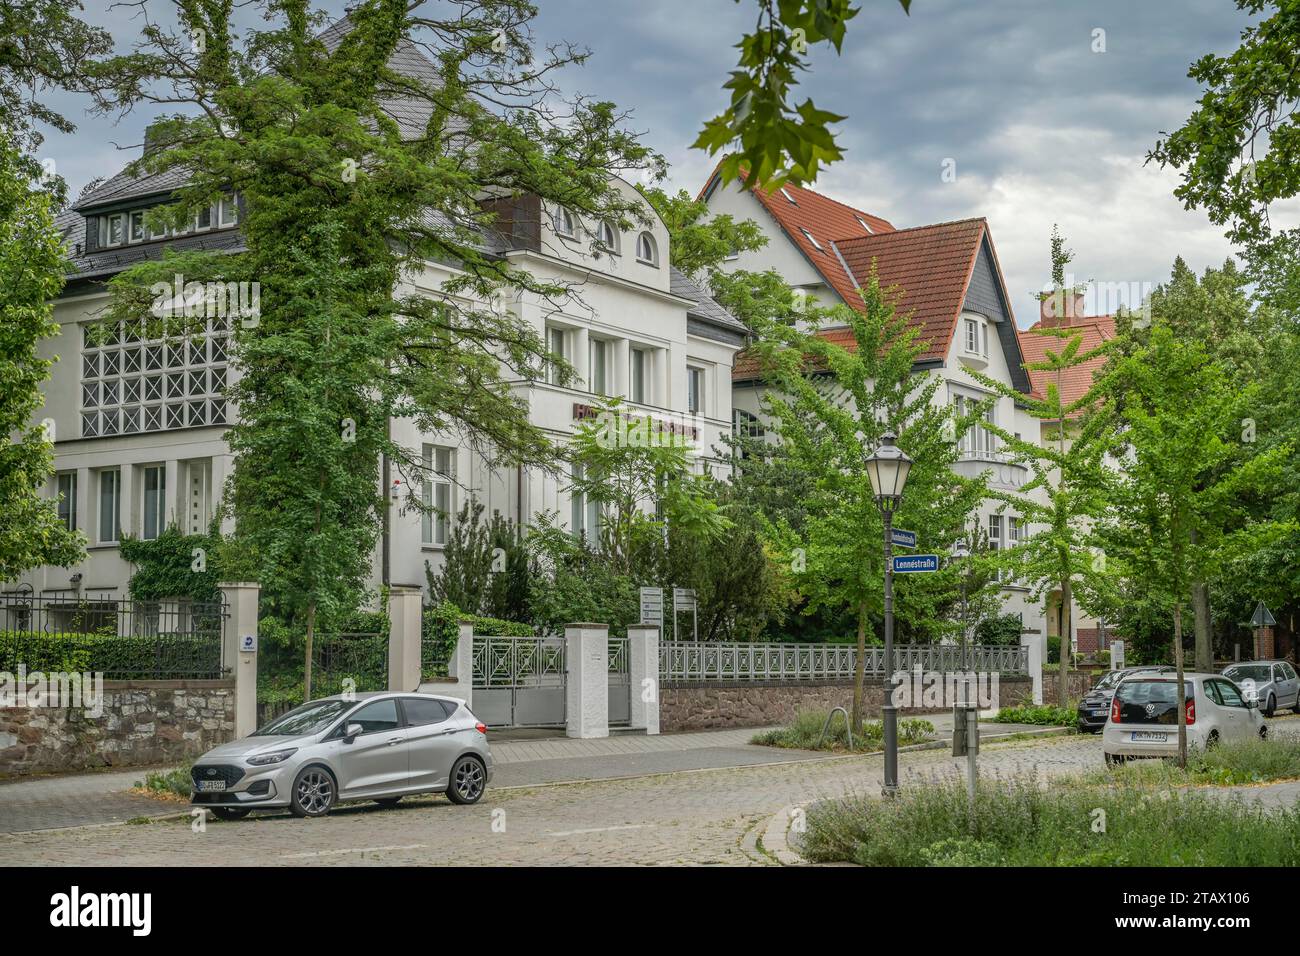 Alte Villa, Haus der Wirtschaft, Lennéstraße, Humboldtstraße, Villenviertel, Magdeburg, Sachsen-Anhalt, Deutschland Stock Photo